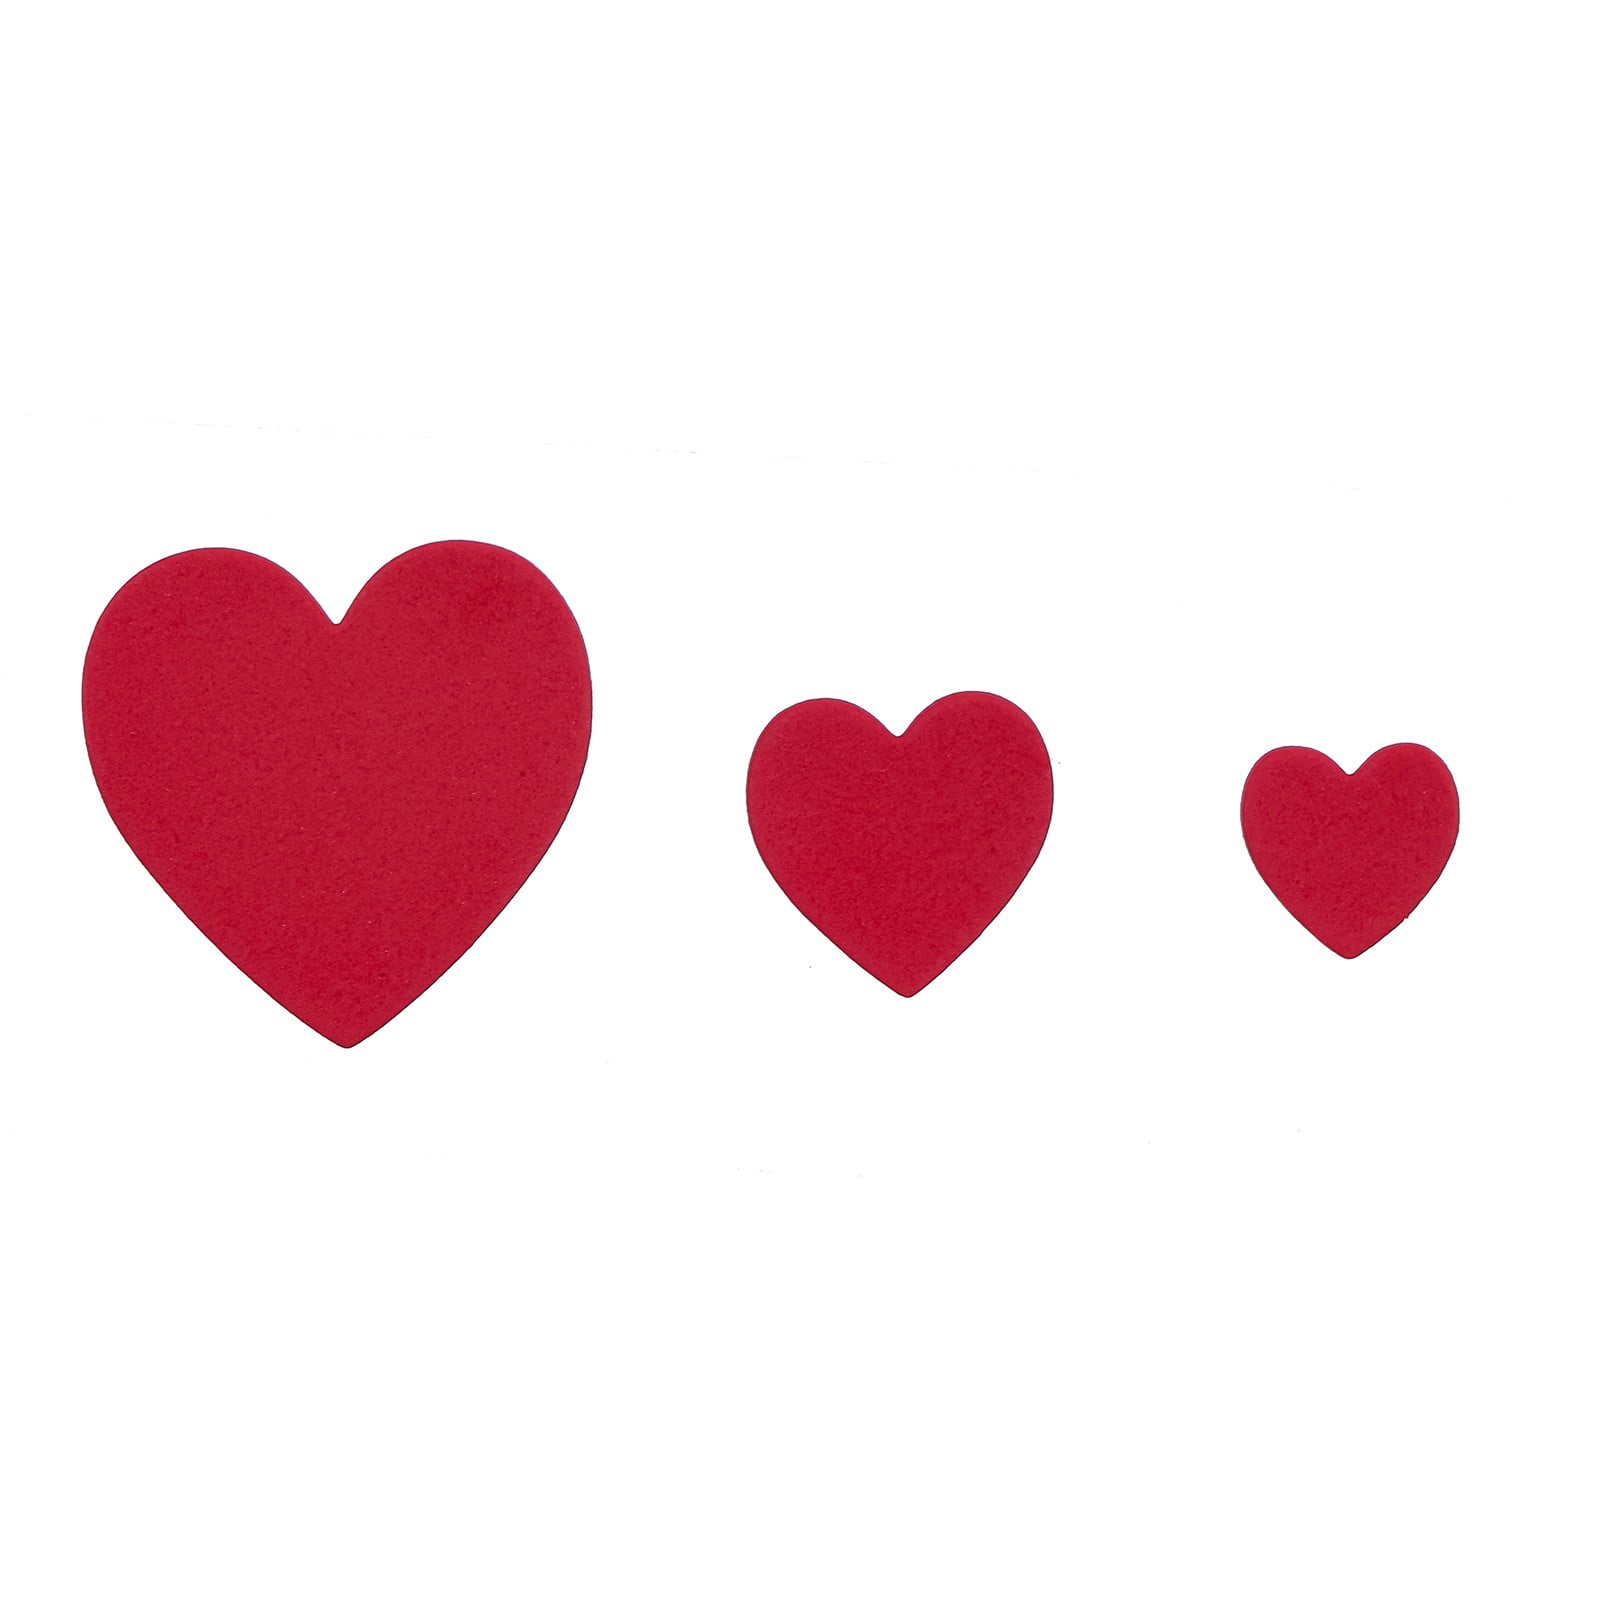 My love heart shape' Sticker